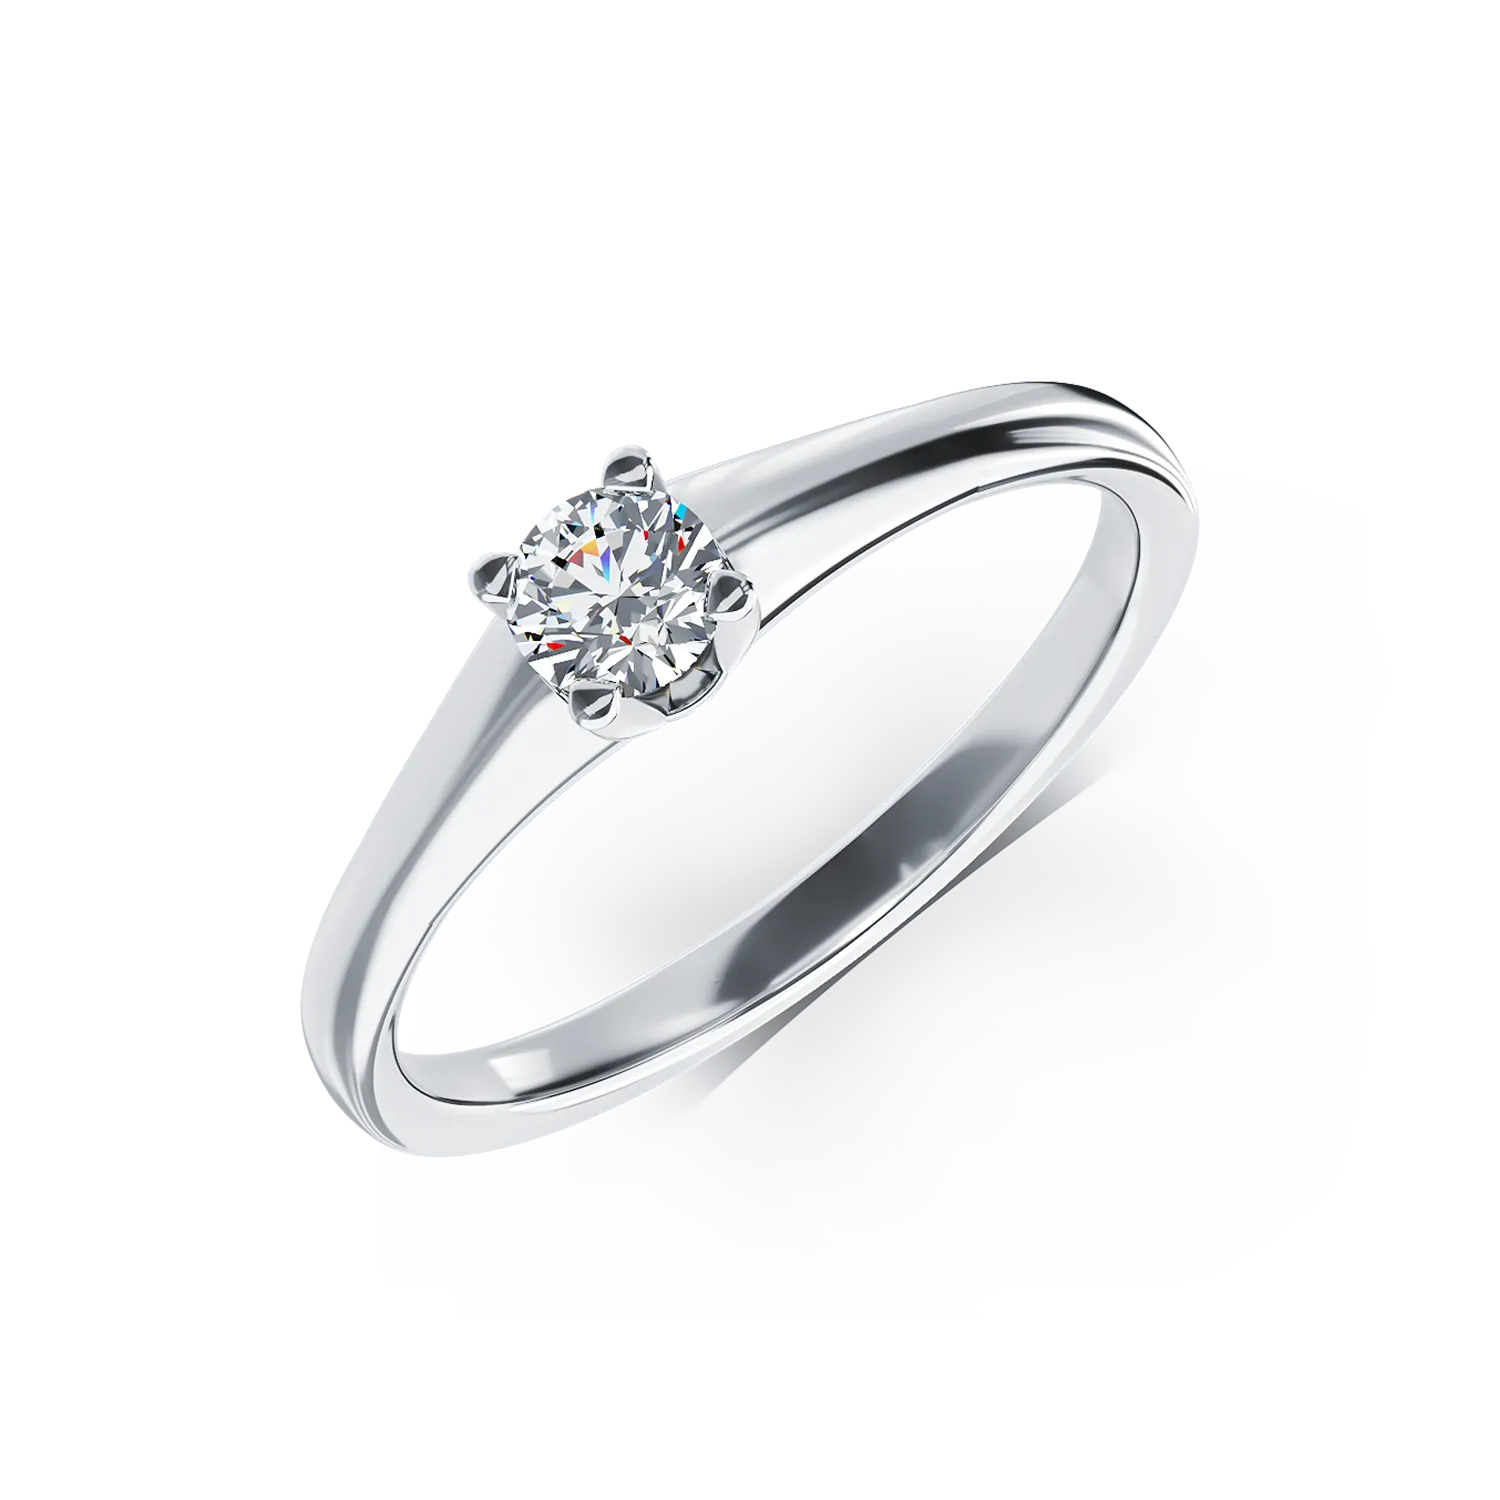 Inel de logodna din aur alb de 18K cu un diamant solitaire de 0.15ct